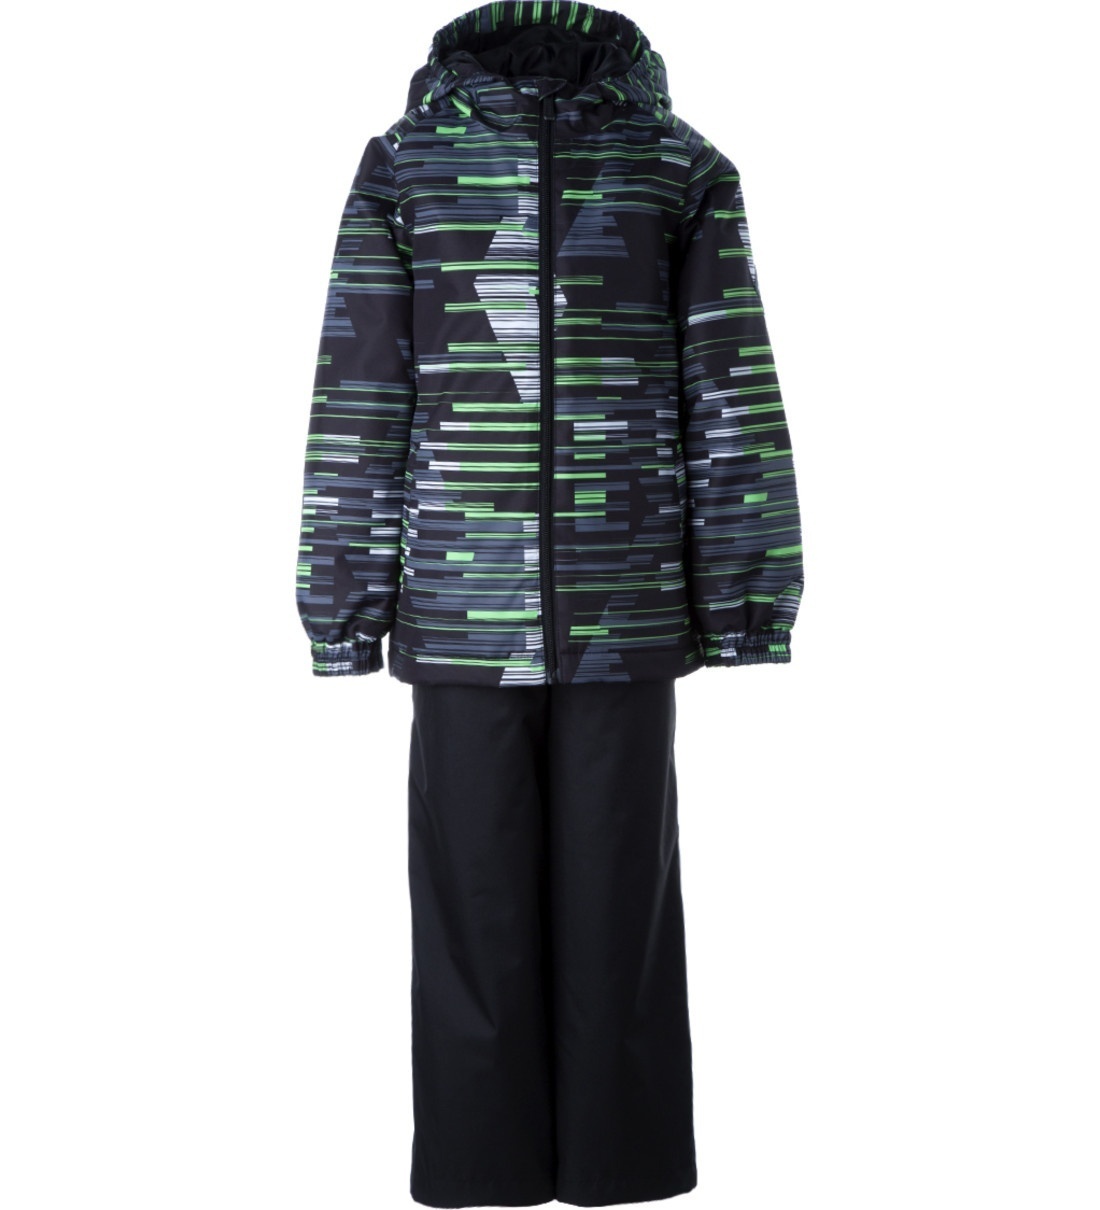 Комплект верхней одежды детский Huppa REX, салатовый, черный, 158